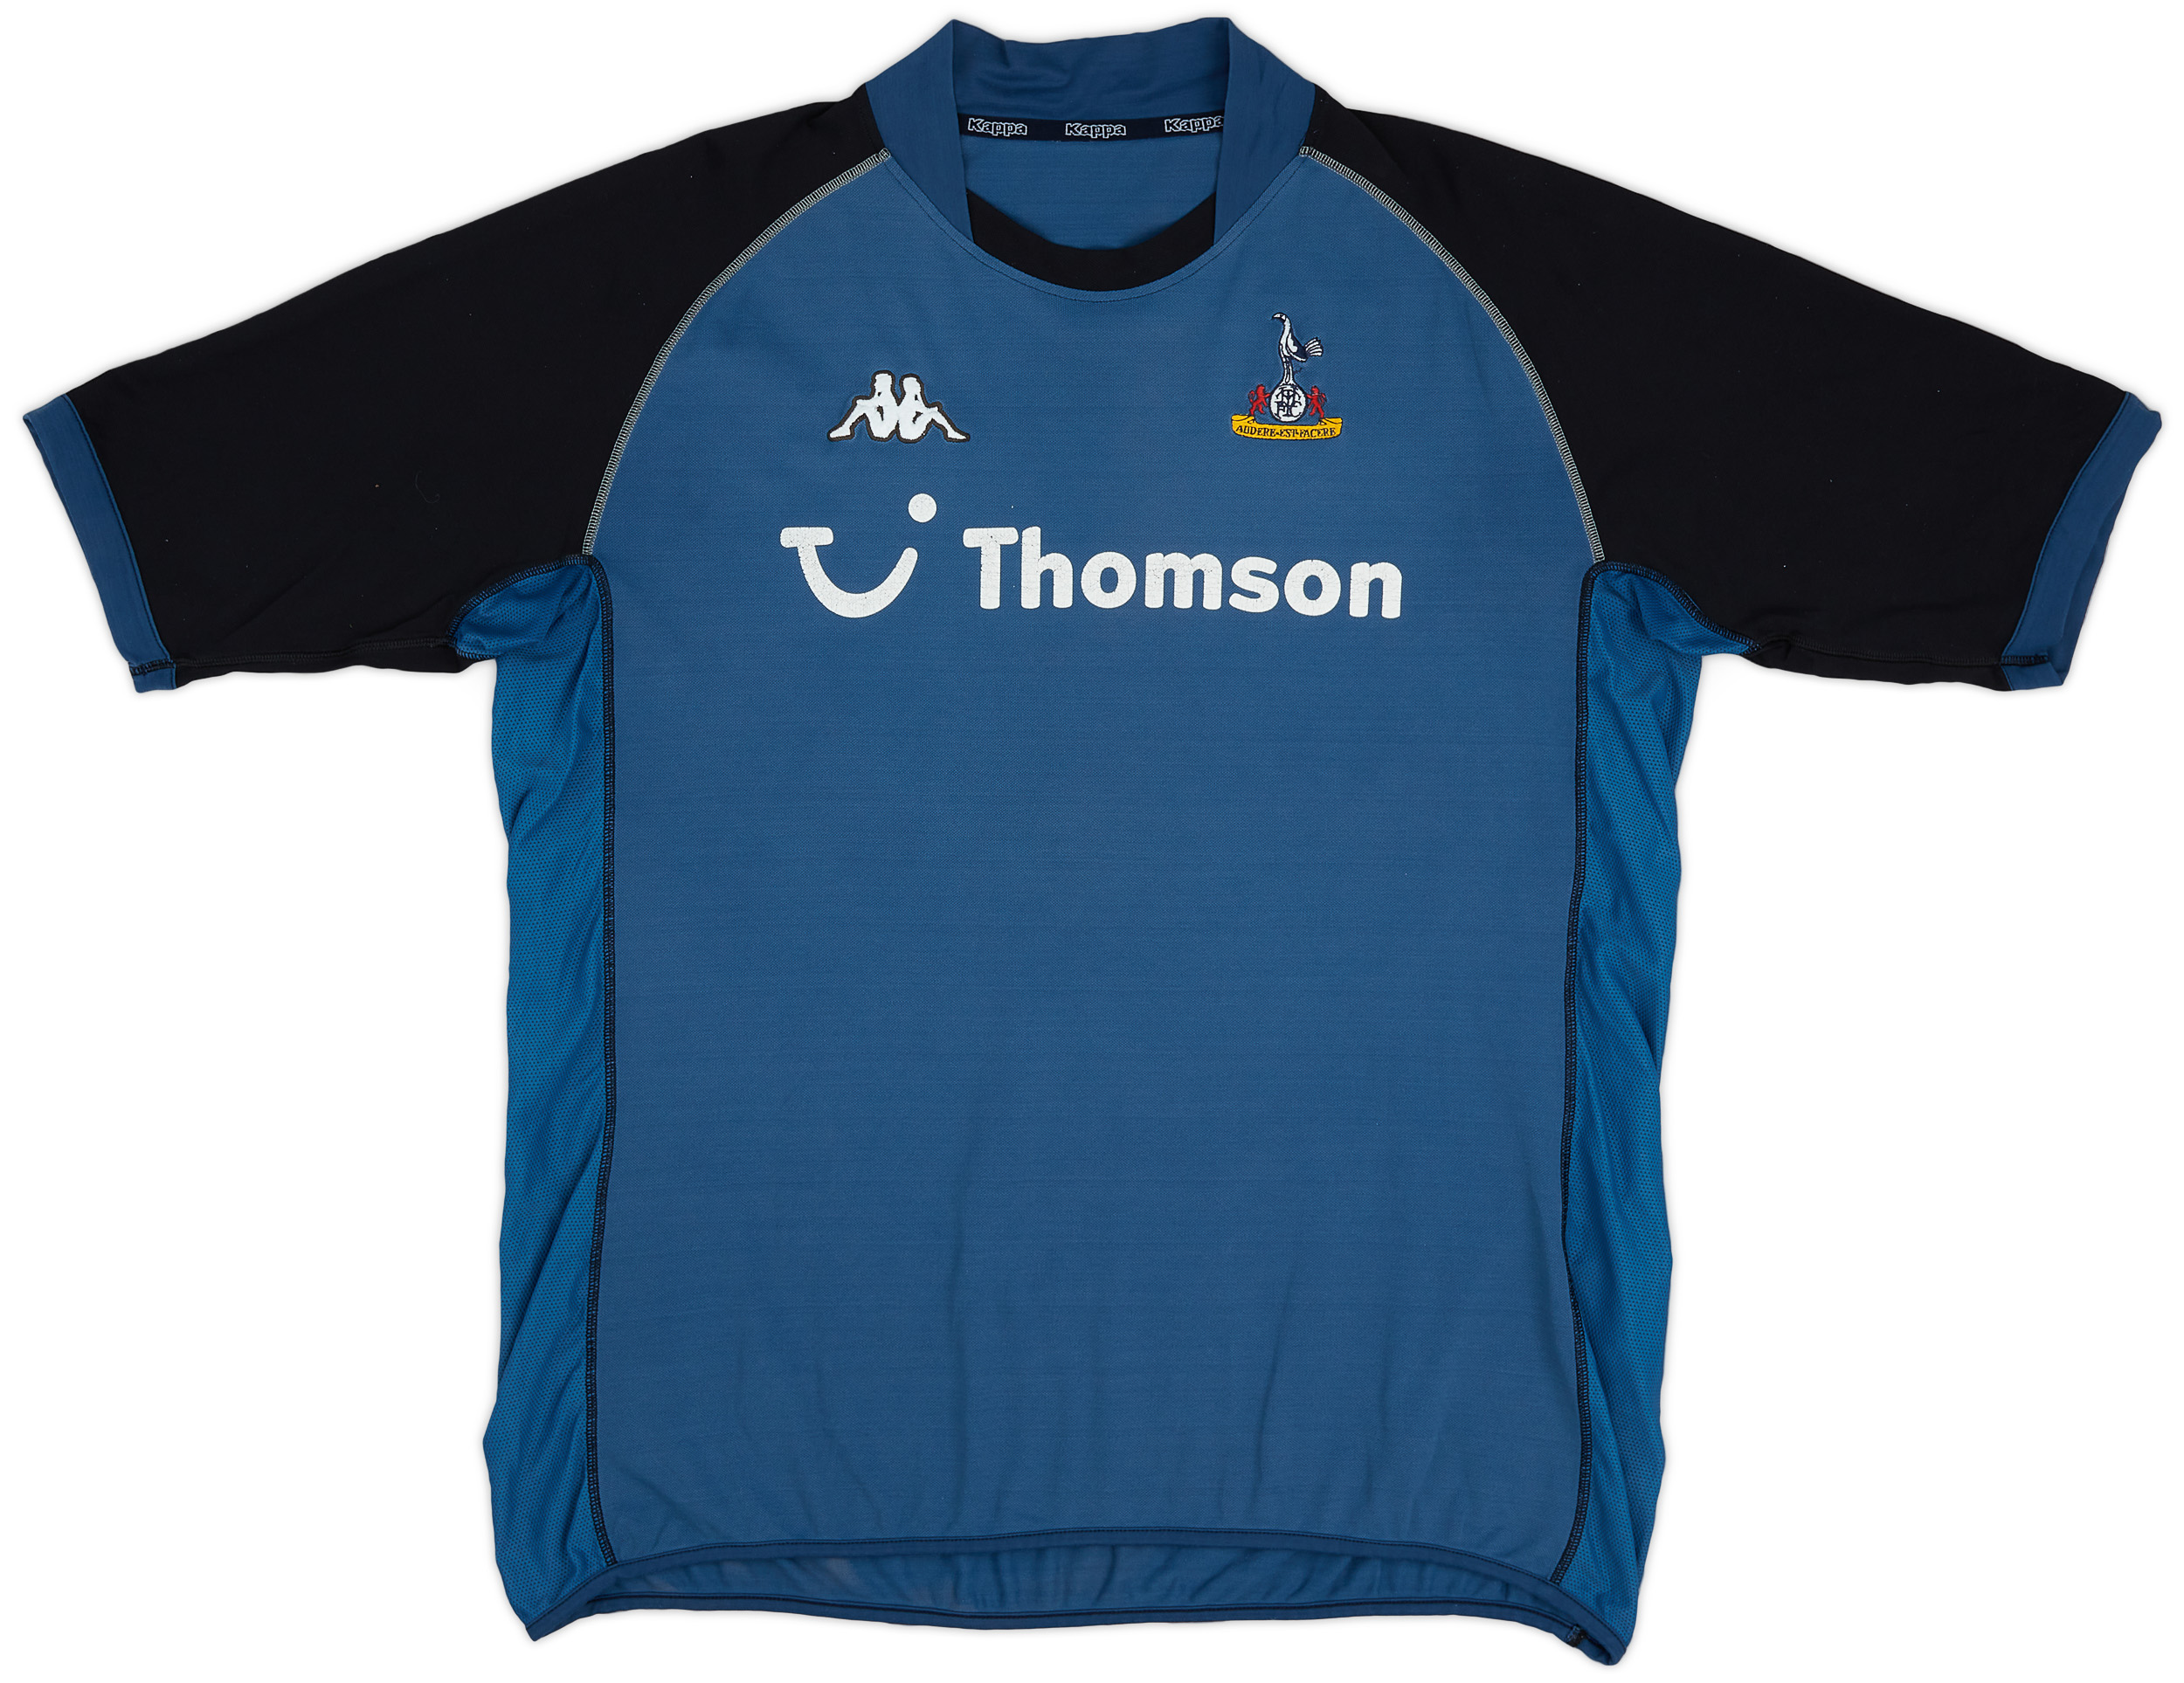 Tottenham Hotspur  Fora camisa (Original)